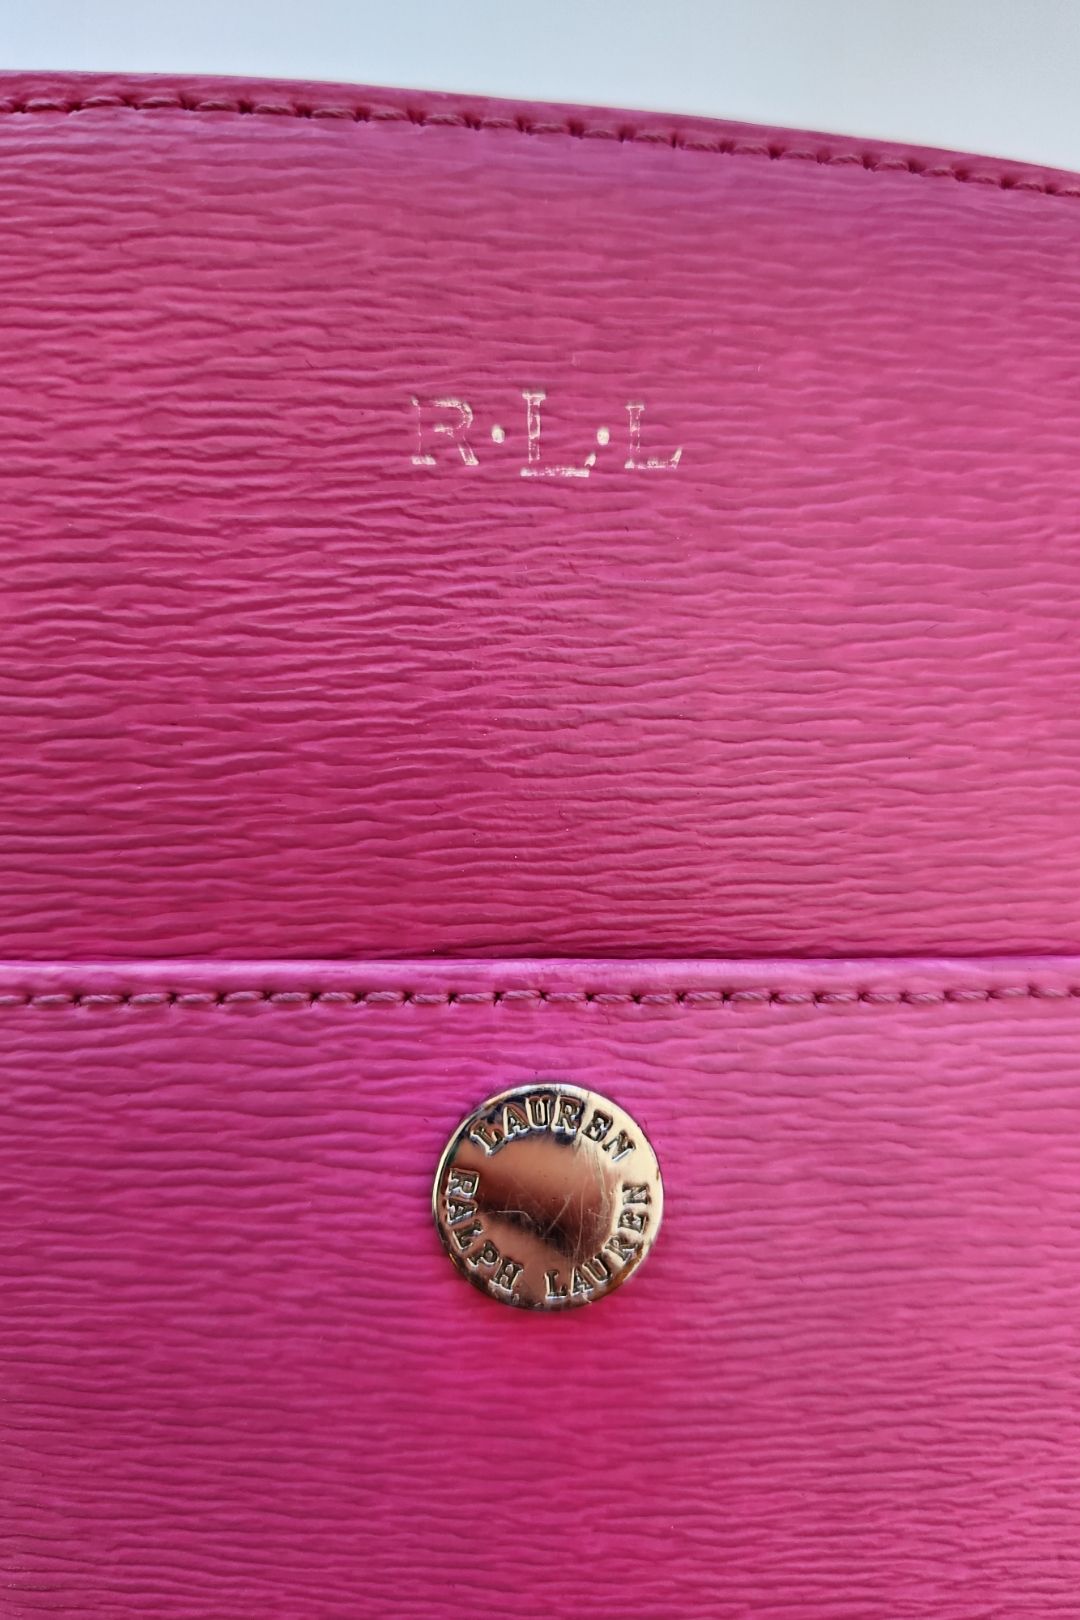 Ralph Lauren Pink Cow Leather Handbag